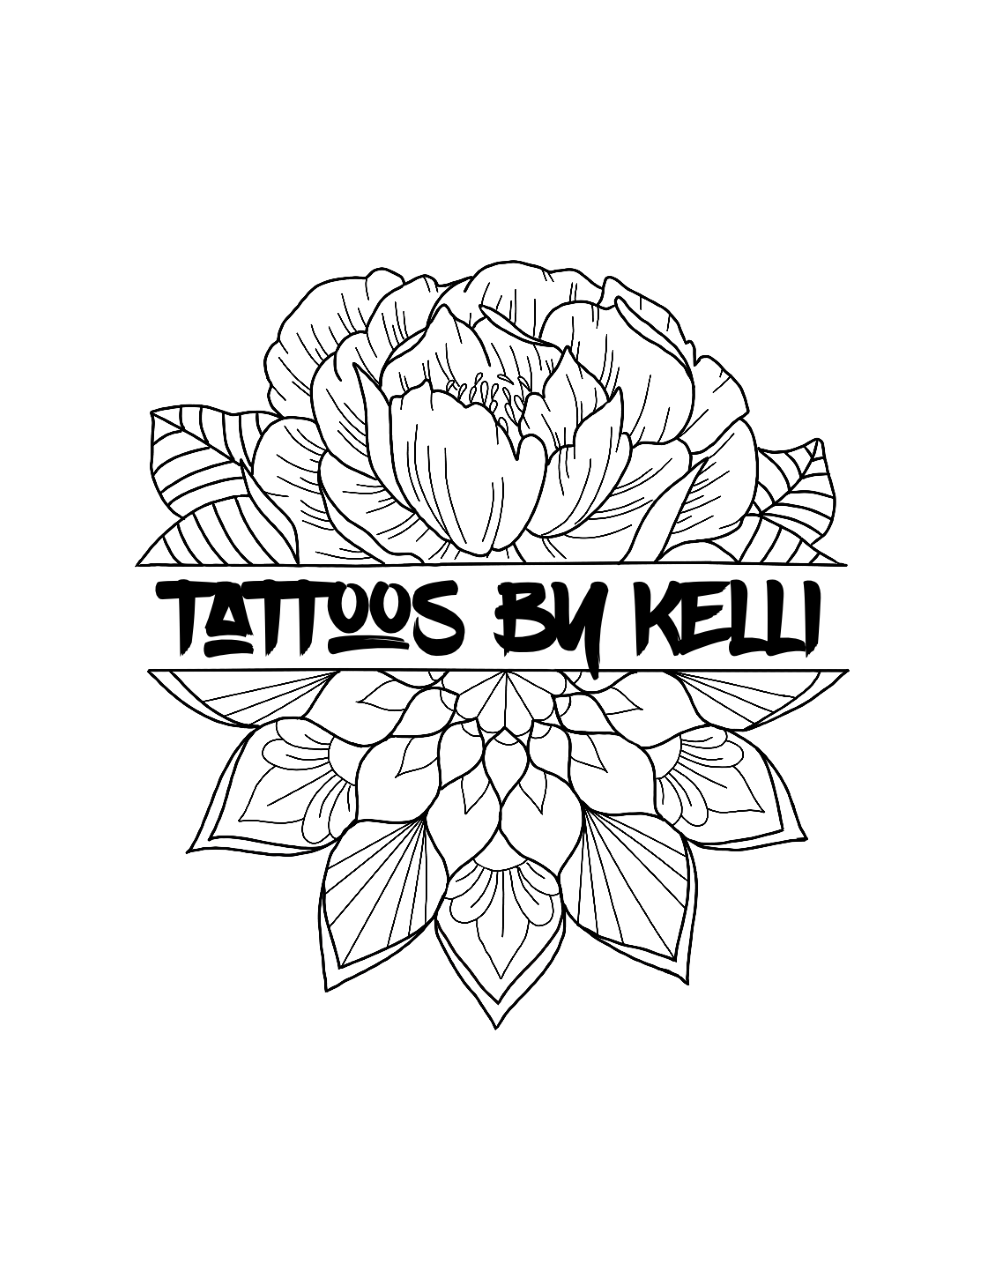 Tattoos By Kelli